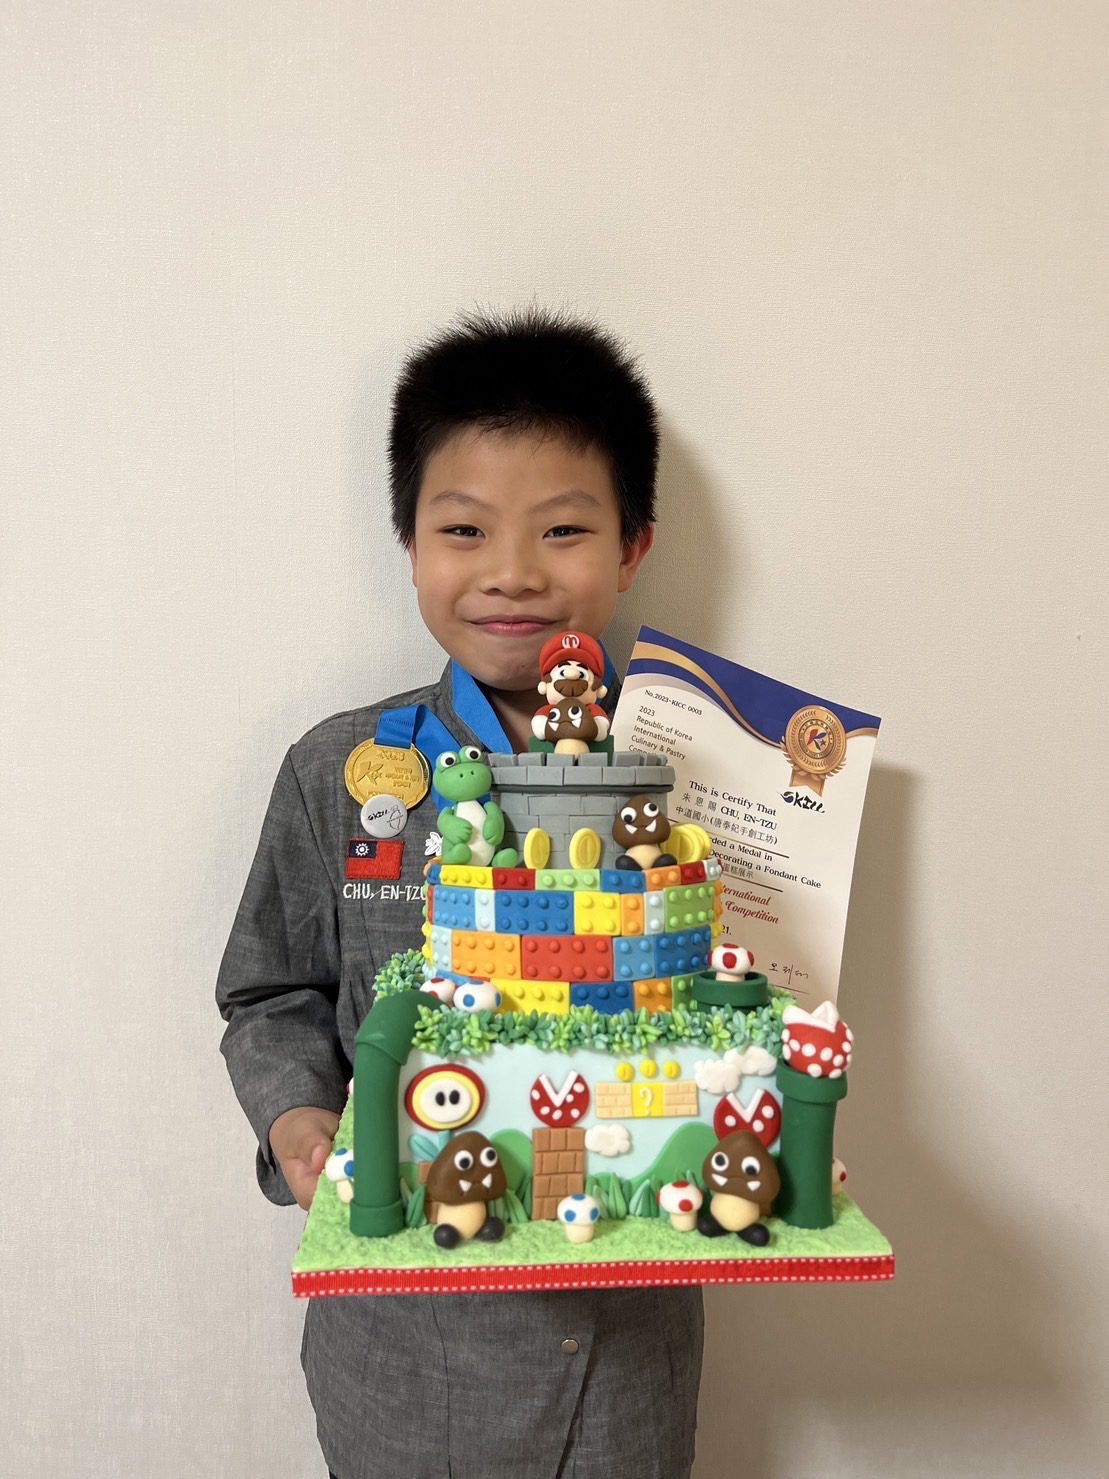 年僅八歲  中道小學朱恩慶榮獲翻糖蛋糕創意設計比賽金牌